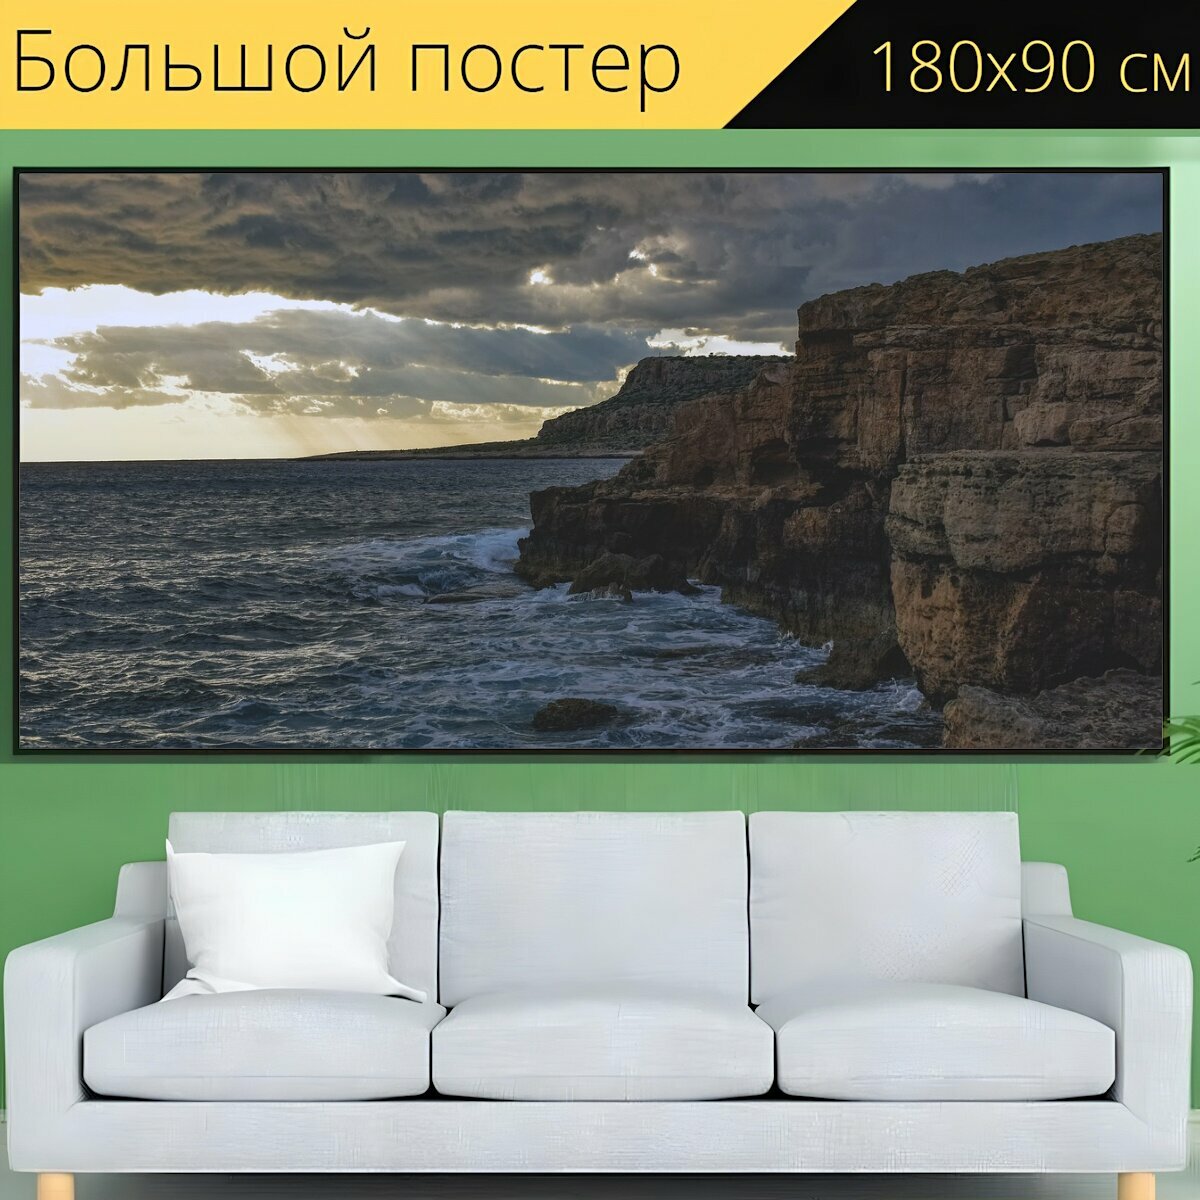 Большой постер "Пейзаж, волны, утес" 180 x 90 см. для интерьера